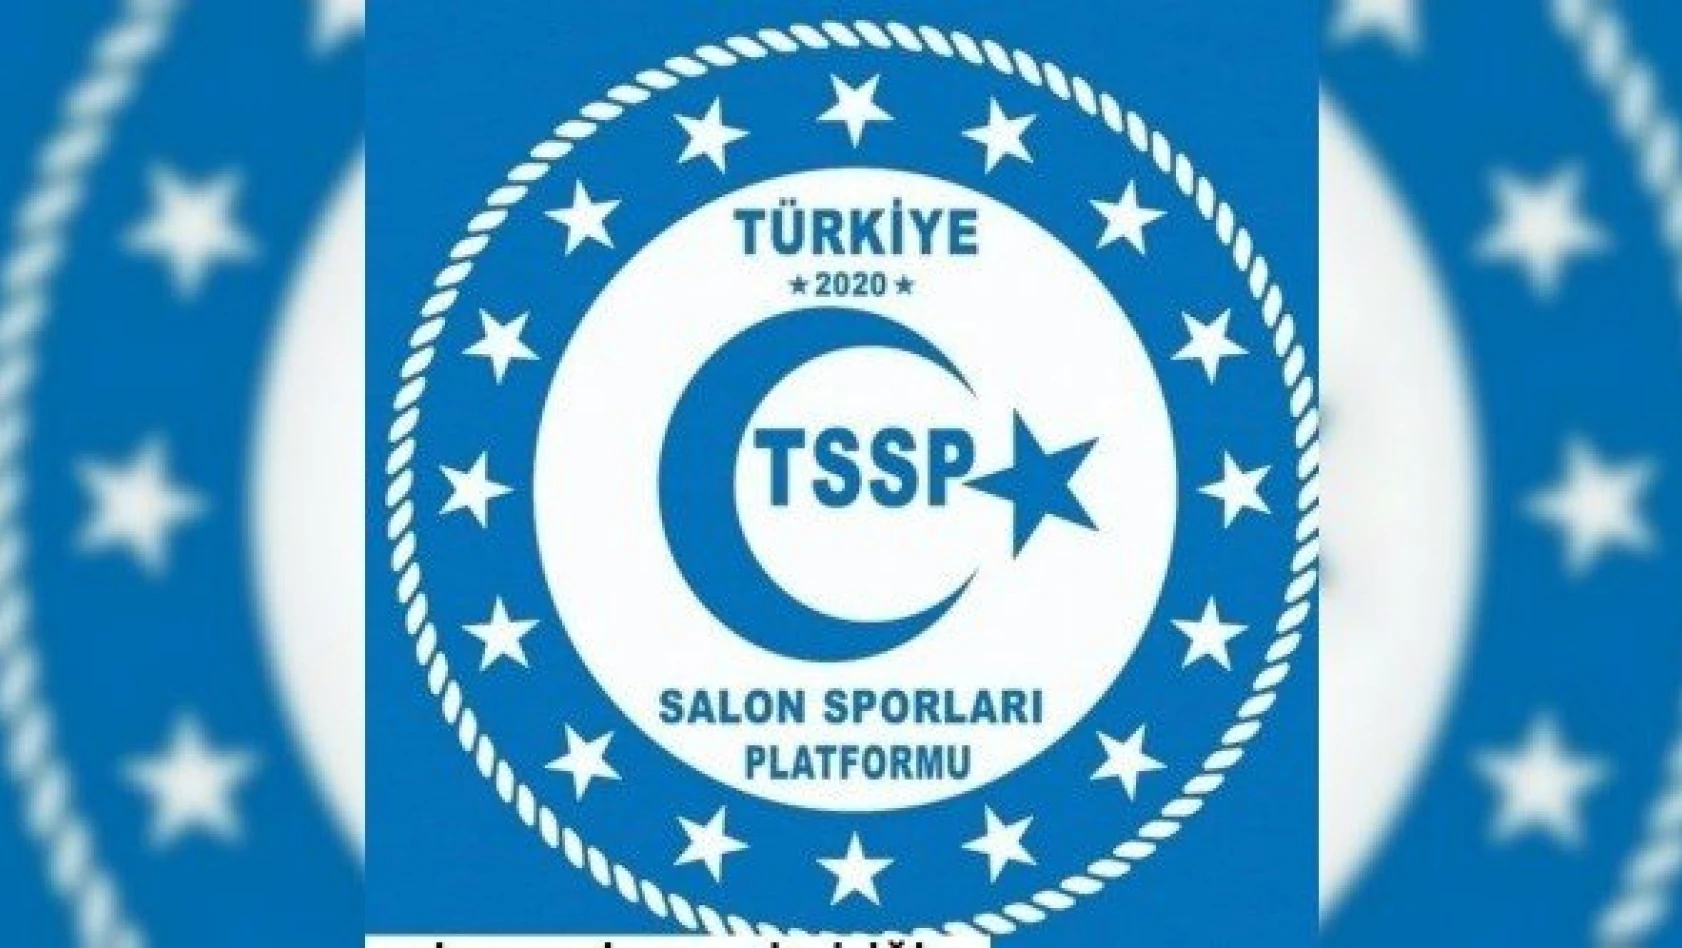 Türkiye Salon Sporları Platformu, basın toplantısı düzenleyecek